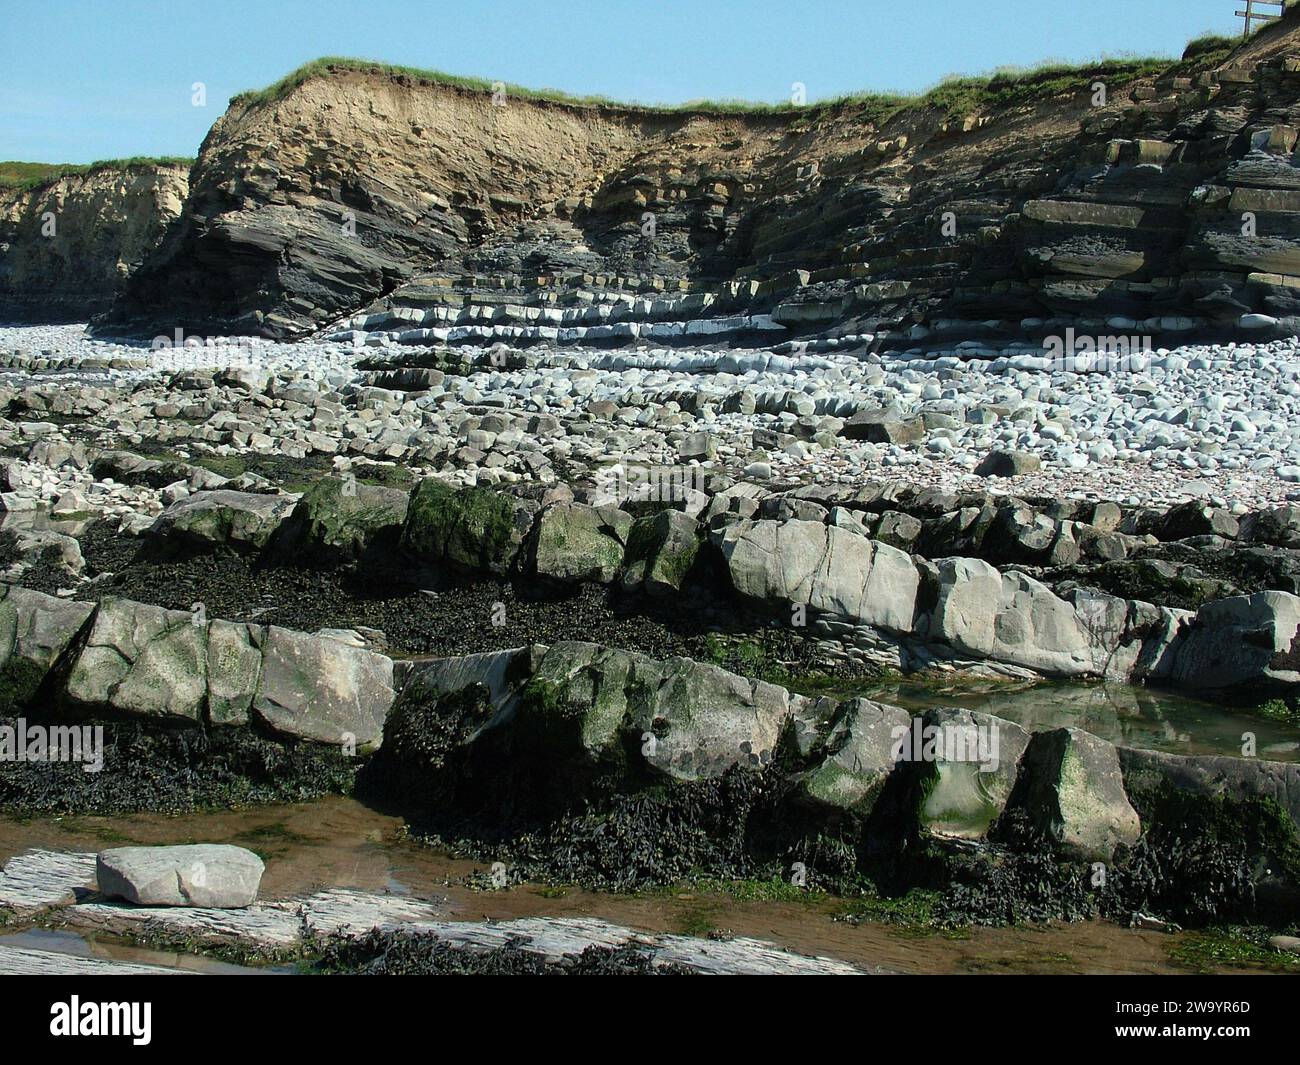 Die Klippen und der Strand von Kilve sind im frühen jurassischen Alter. Die Schichten enthalten Kalkstein- und Schieferschichten aus der unteren Lias-Zeit.Kilve liegt auf der Südseite Stockfoto